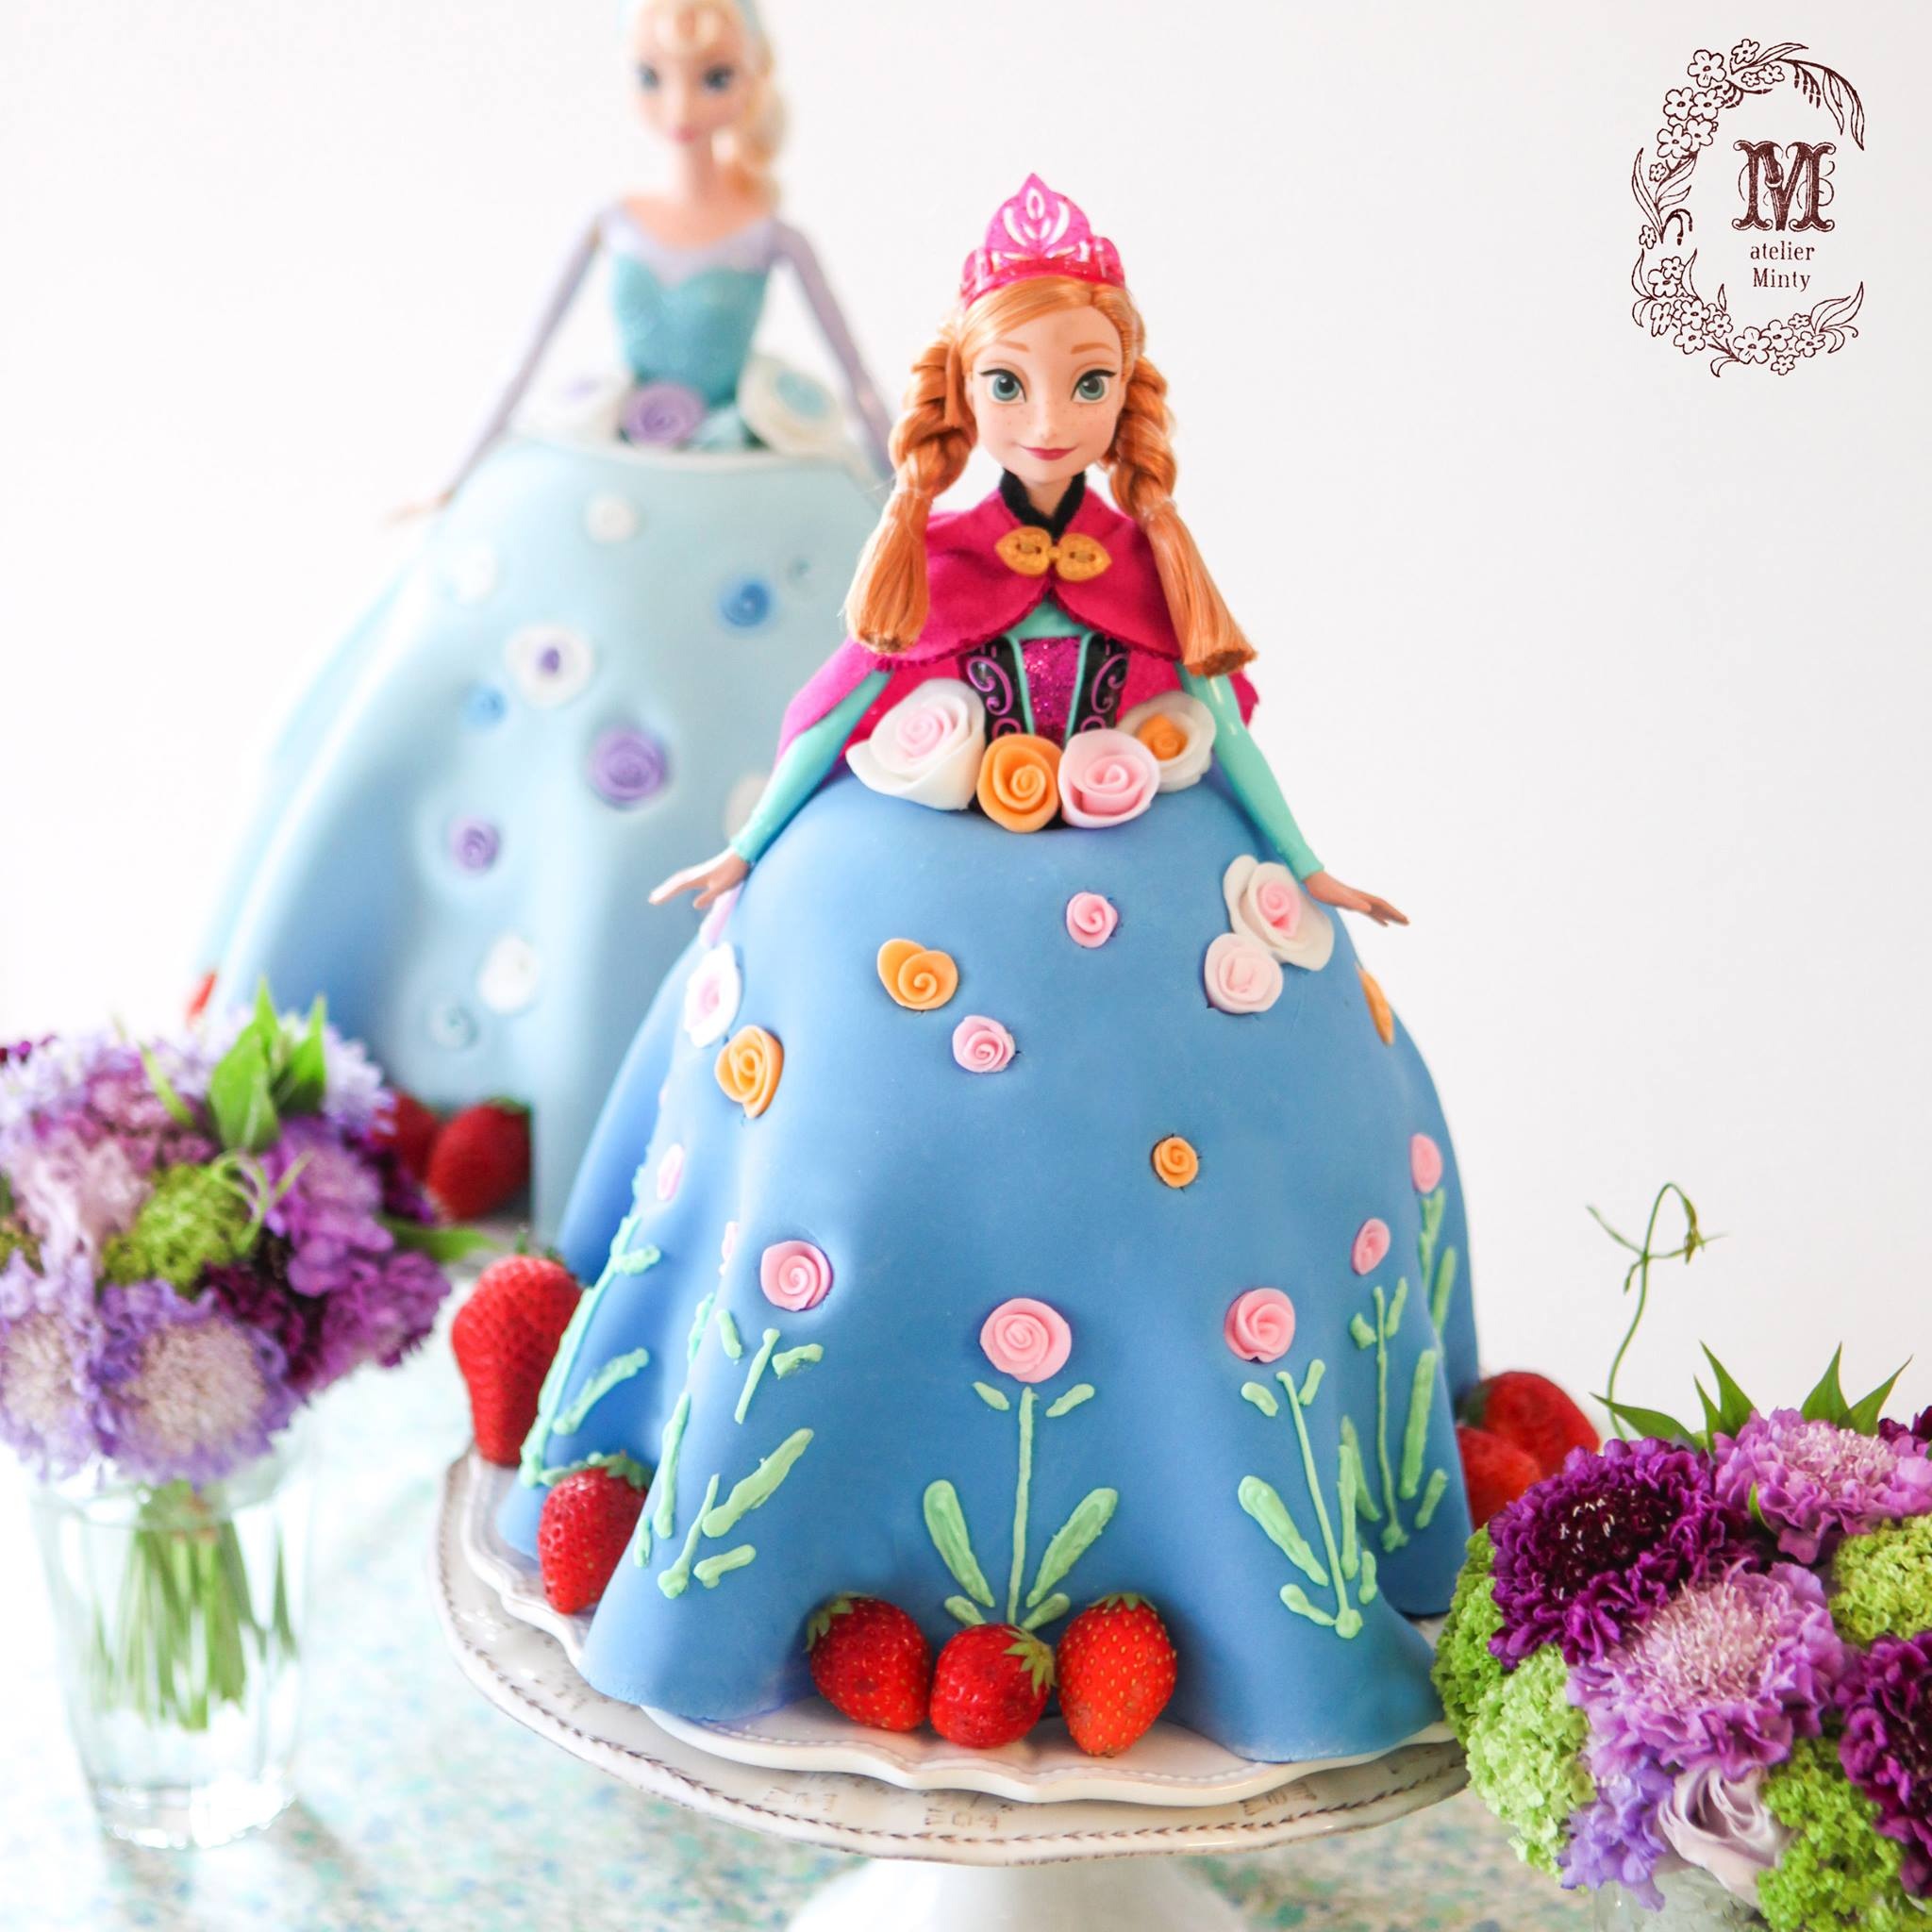 アナと雪の女王のプリンセスケーキ Atelier Minty